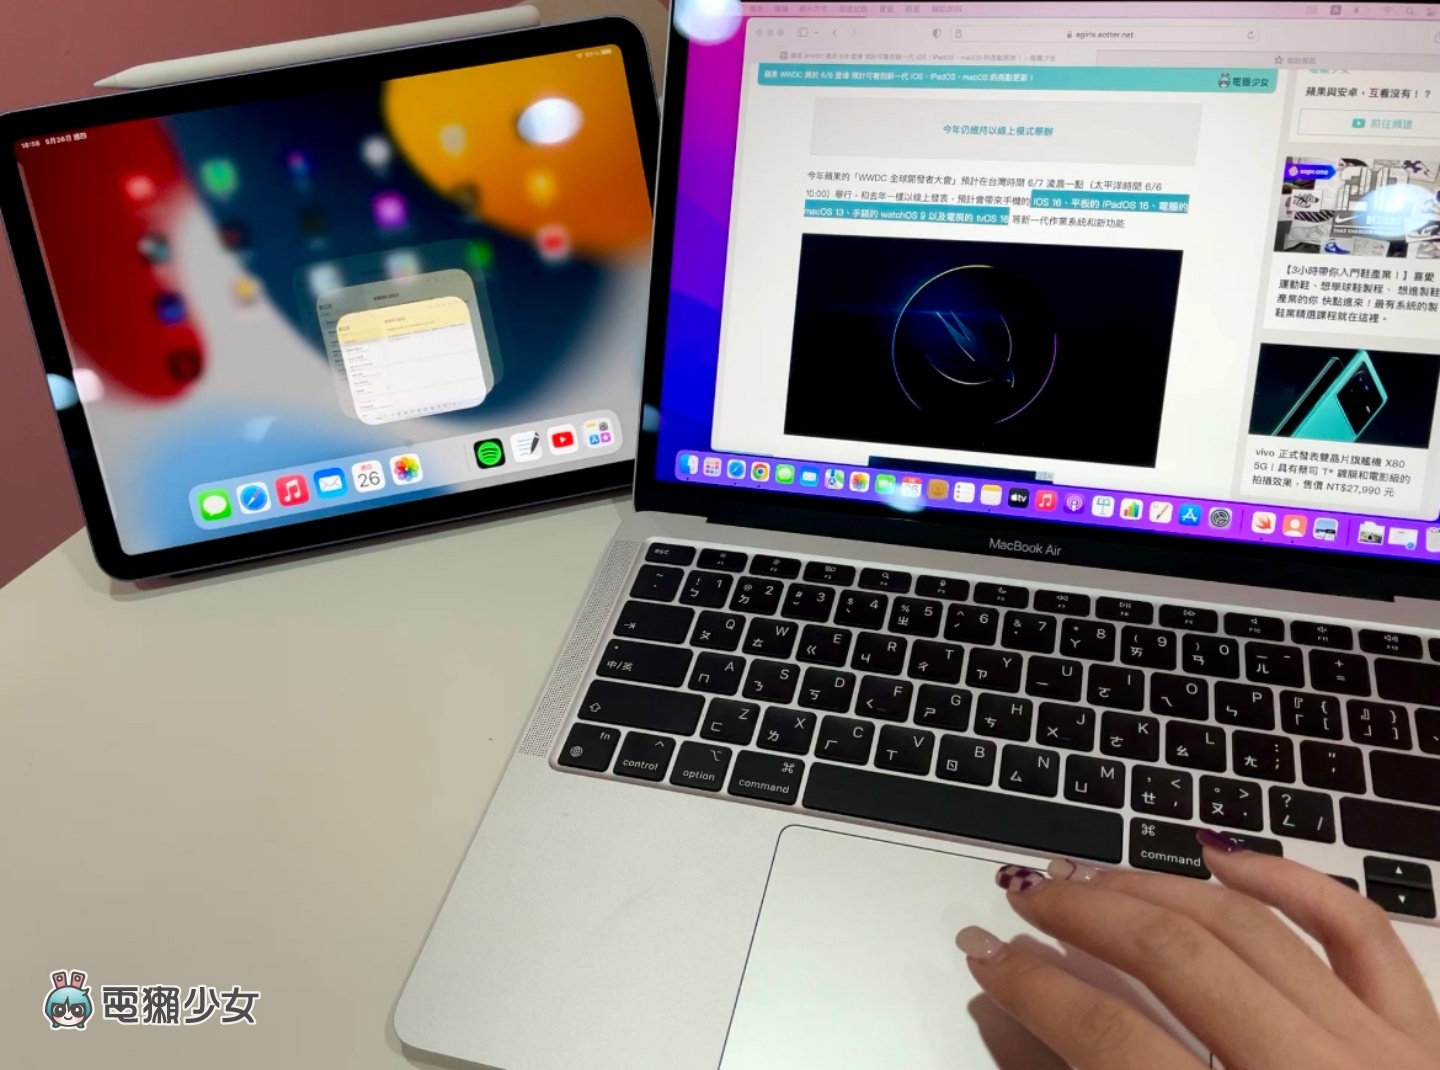 教學｜蘋果『 通用控制 』功能你用過了嗎？輕鬆在 Mac 和 iPad 間切換、打字、移動文件和檔案